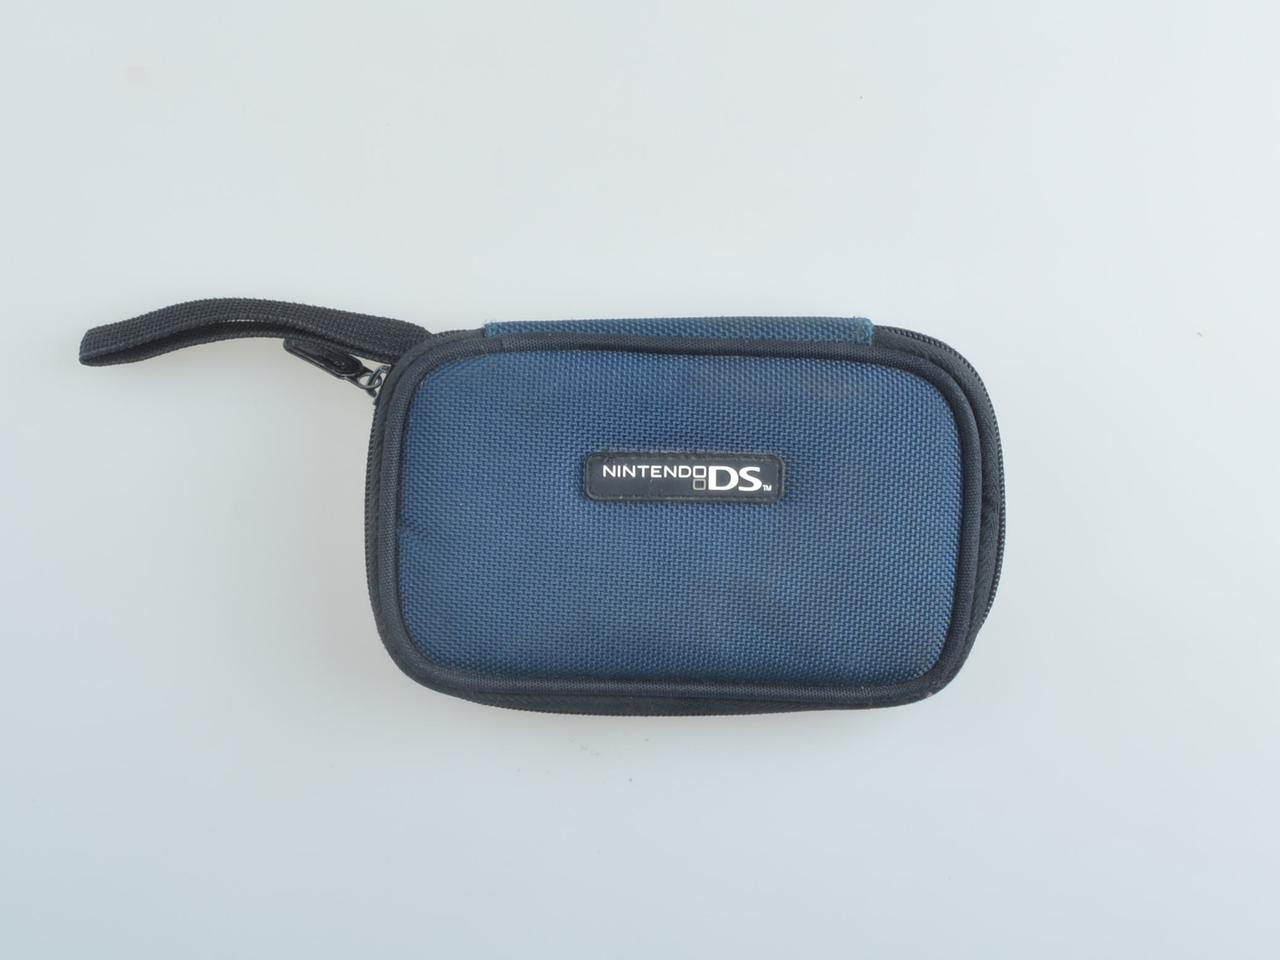 Original Nintendo DS Bag - Nintendo DS Hardware